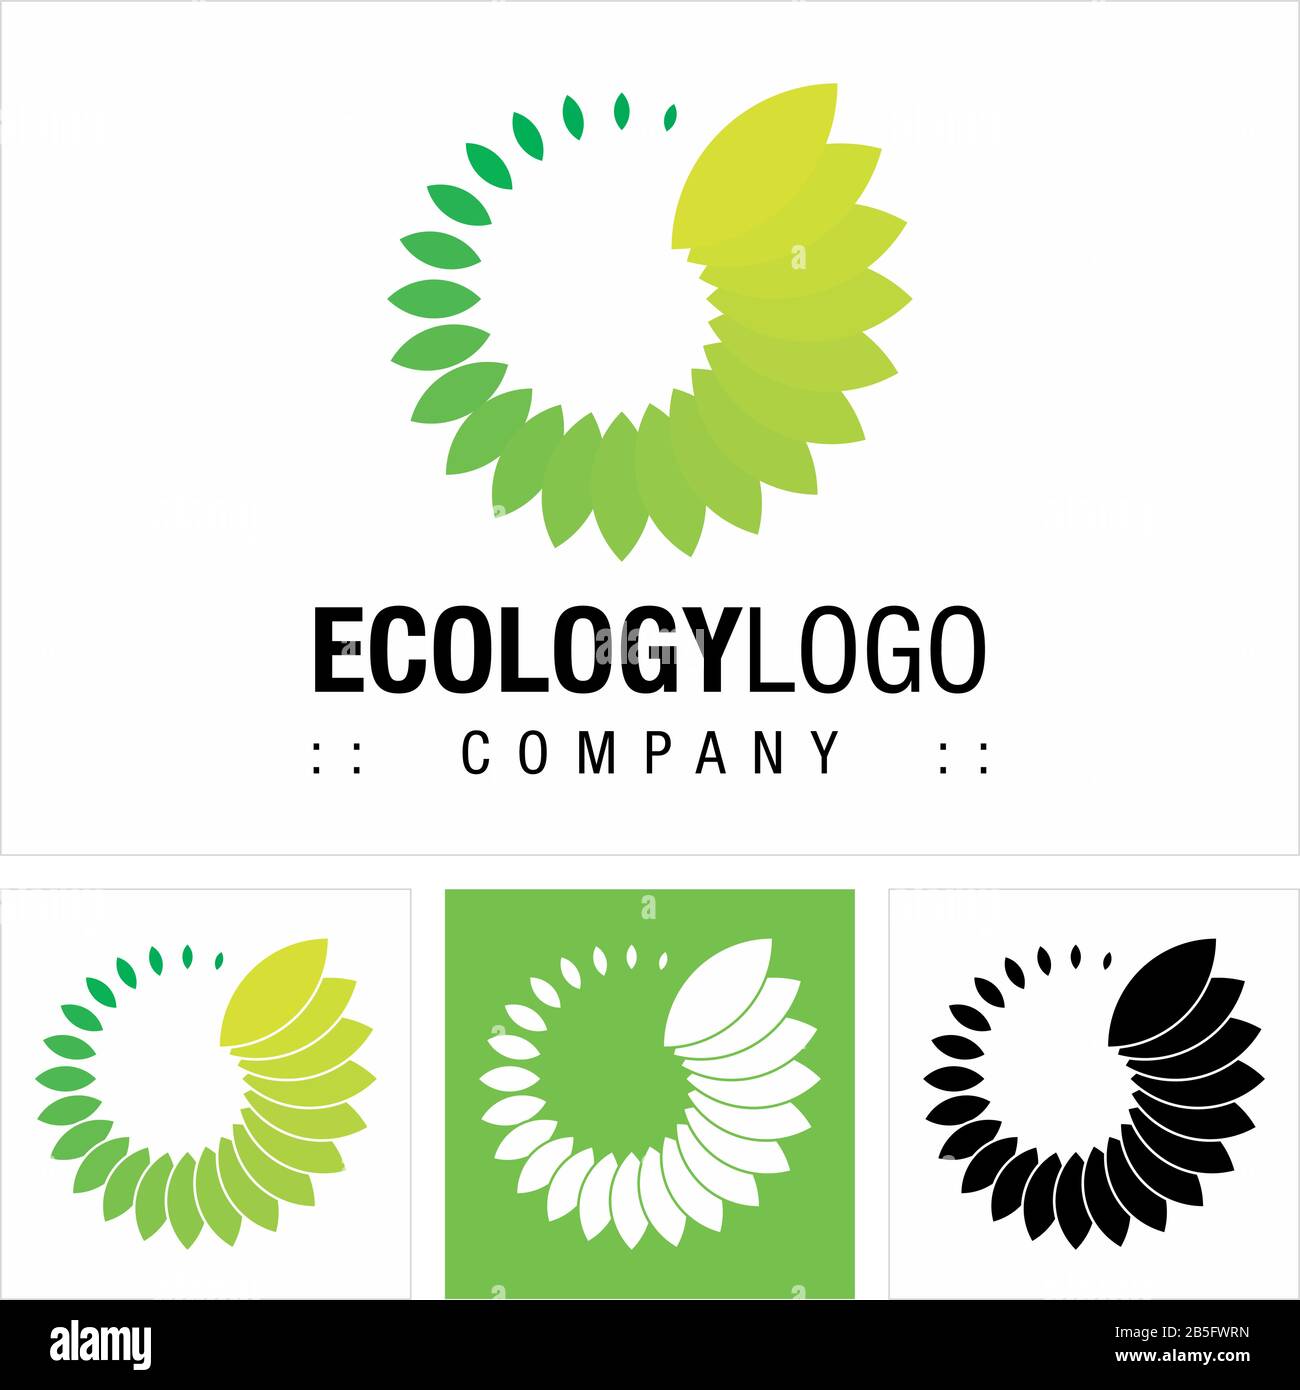 Ökologie (Umwelt, Nachhaltigkeit, Globale Erwärmung) Vector Symbol Company Logo (Logotyp). Abbildung: Blatt, Blätter, Grün, Symbol "Natur". Eleganter Mo Stock Vektor